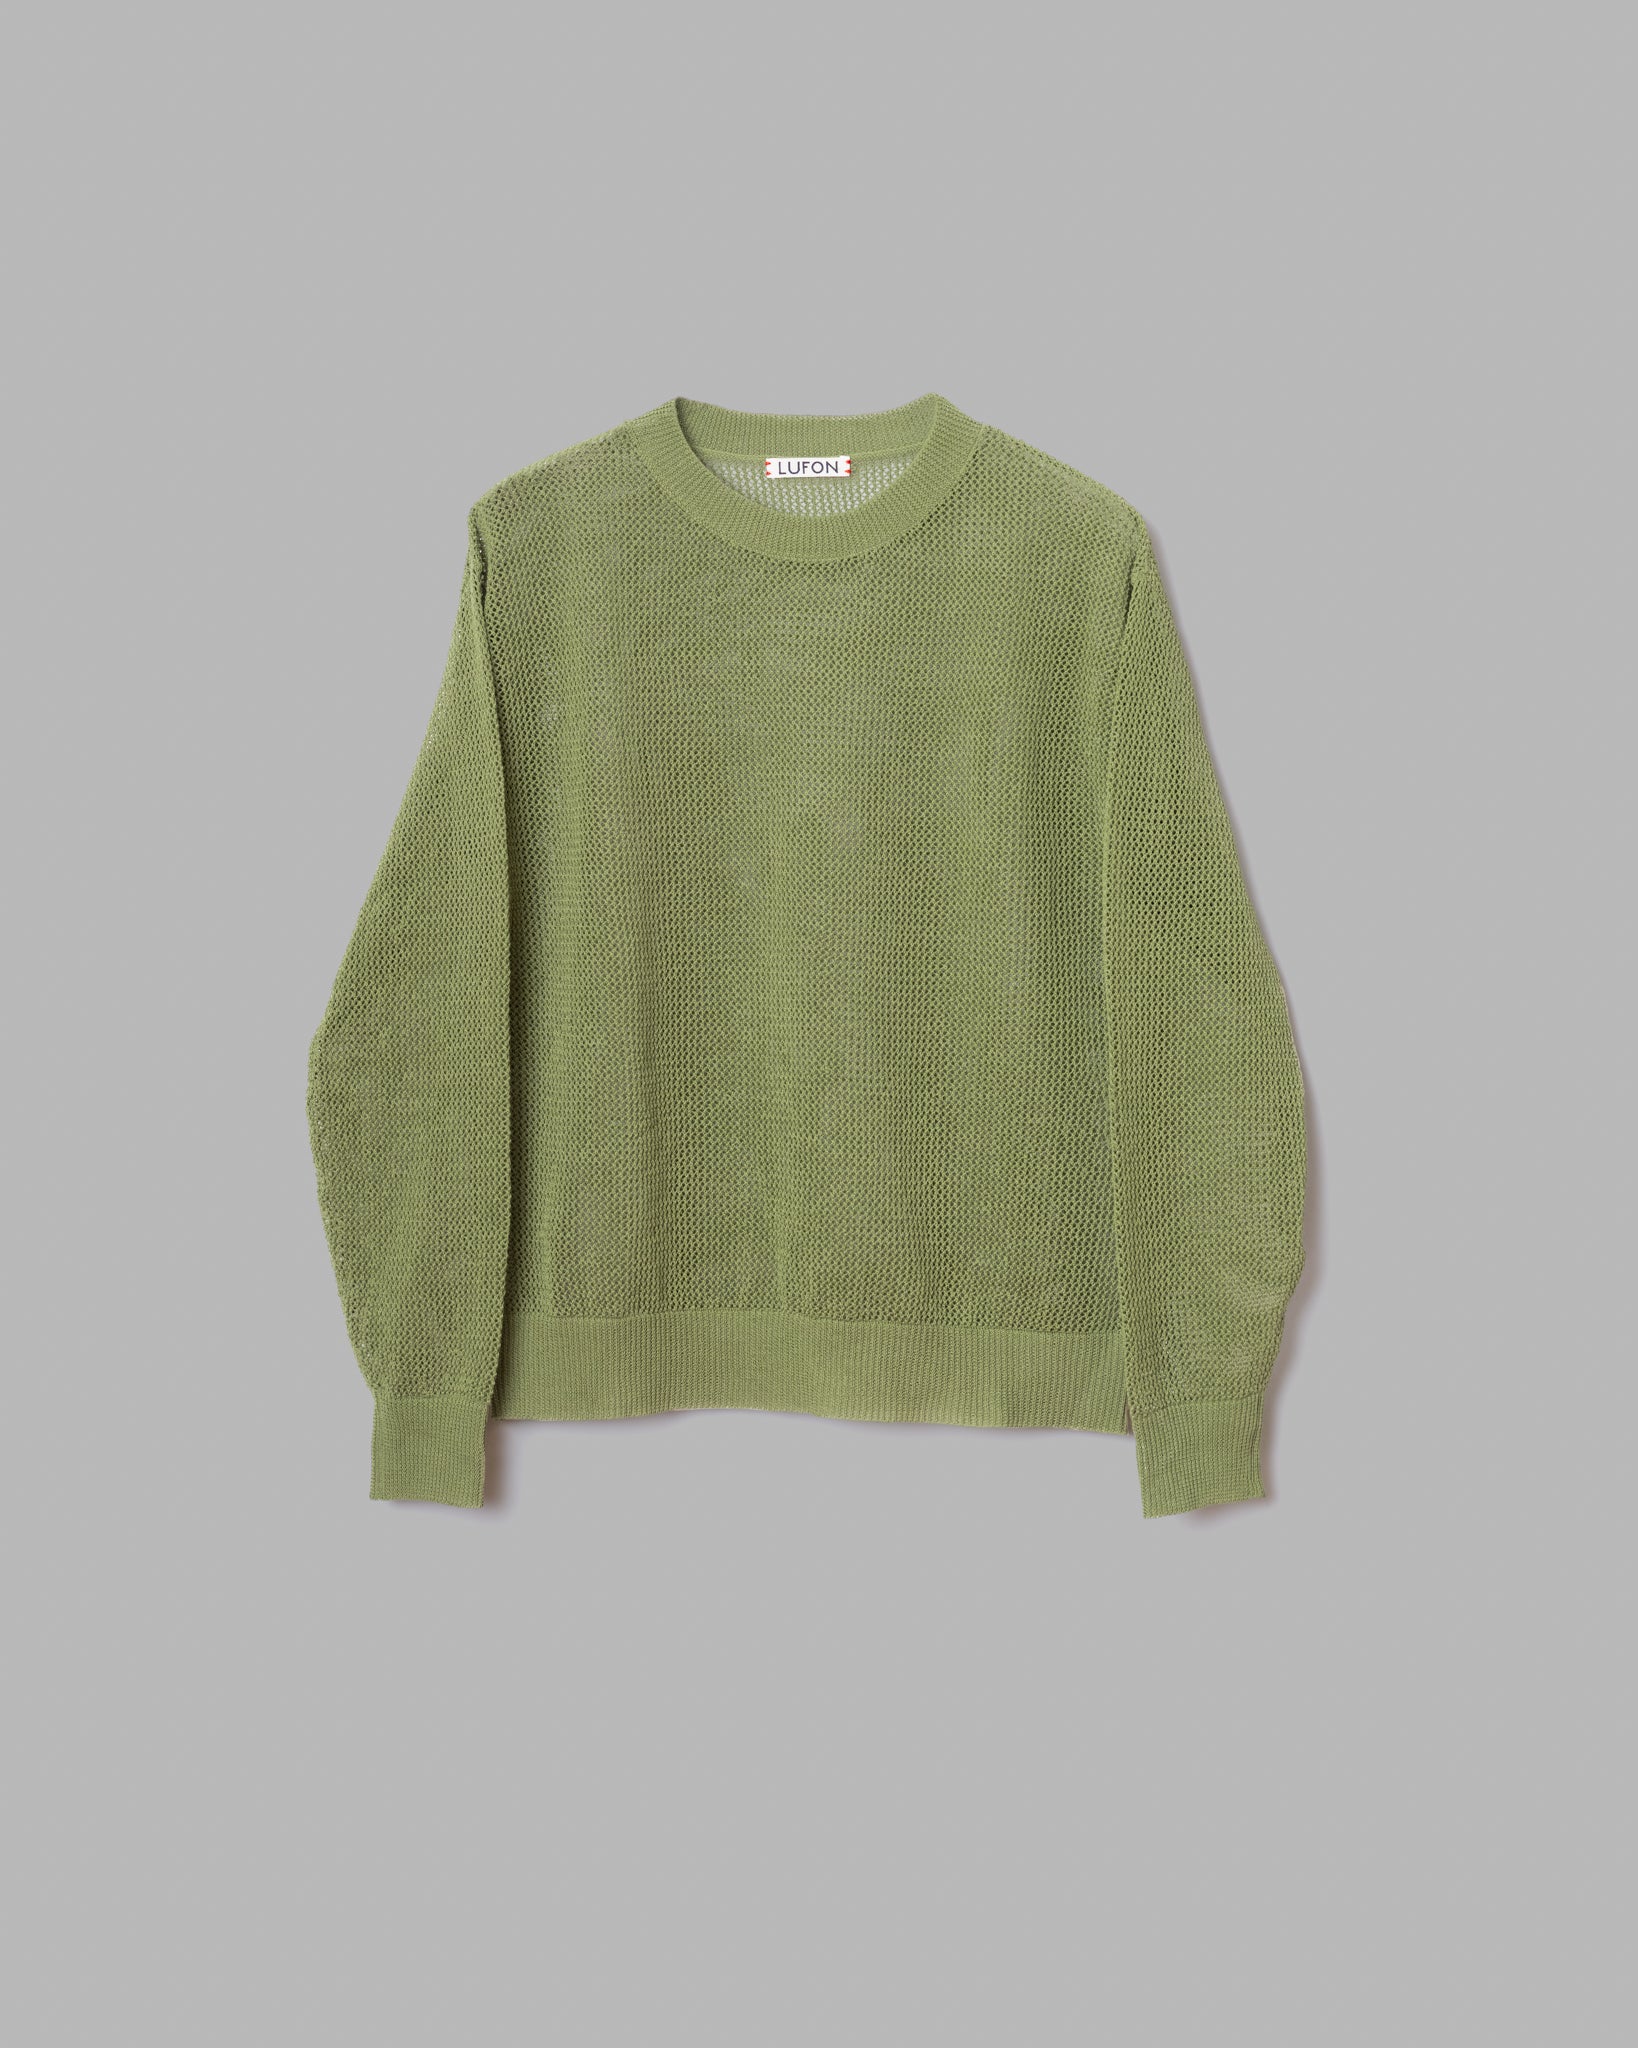 기마 코튼 메쉬 니트 풀오버 스웨터 -녹색